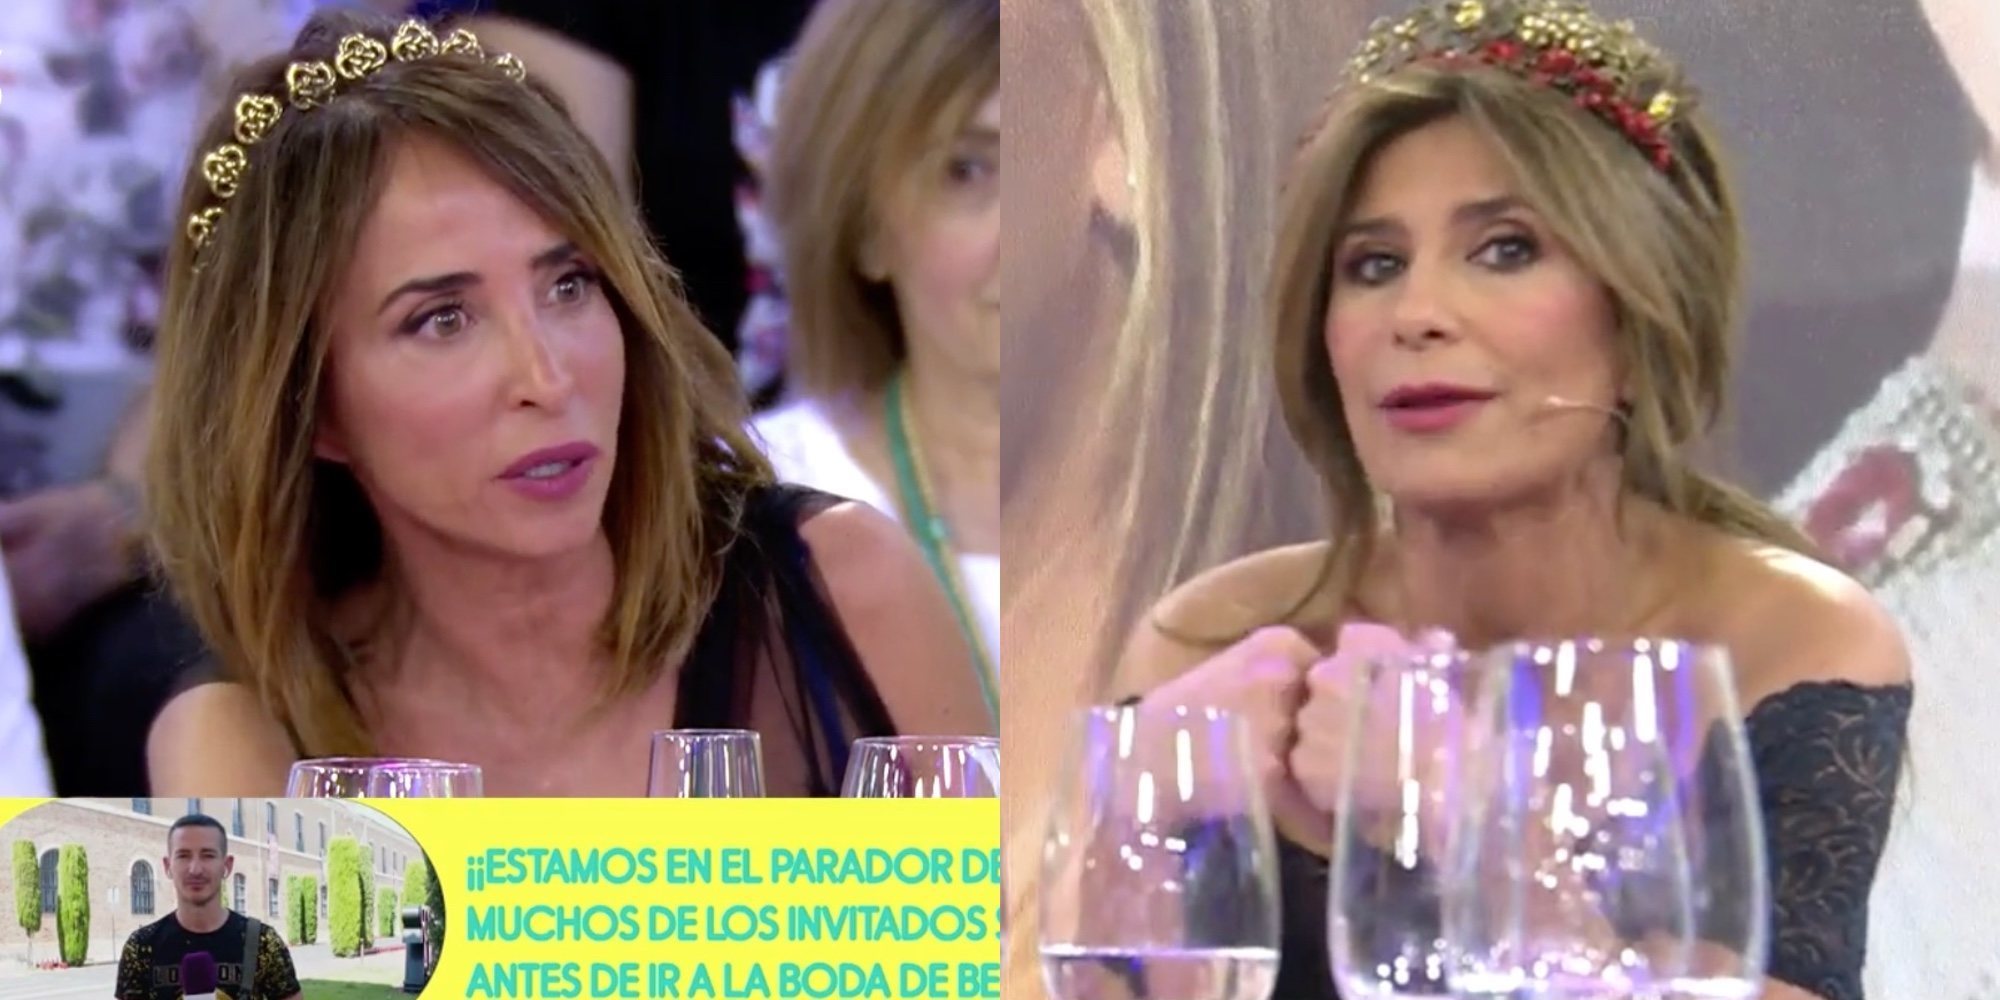 Gema López no estará en la exclusiva de la boda de Belén Esteban: María Patiño sí saldrá